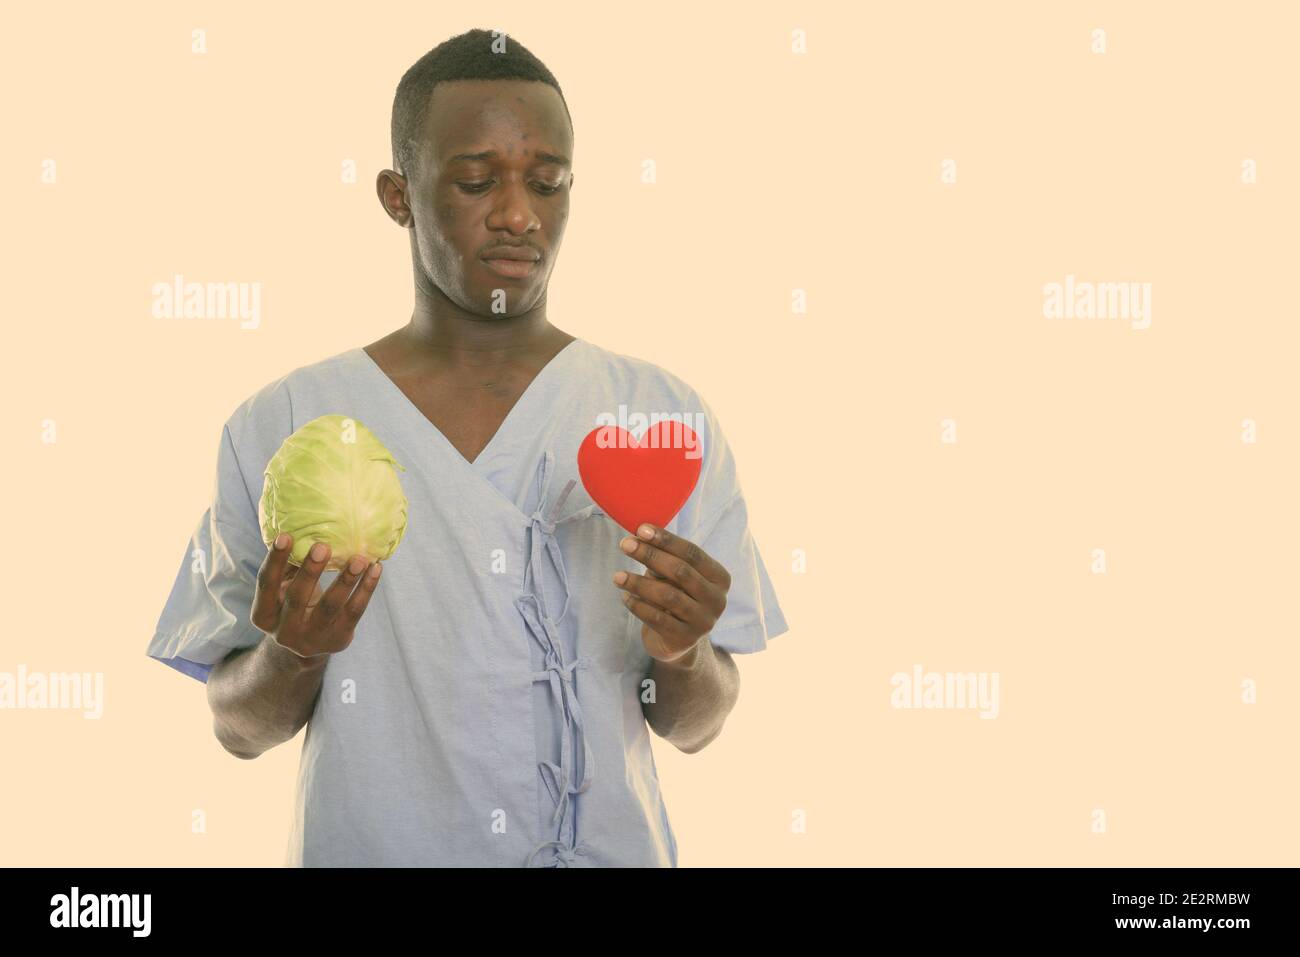 Foto de estudio de la joven paciente hombre negro africano la celebración de repollo verde y mirando al corazón rojo Foto de stock